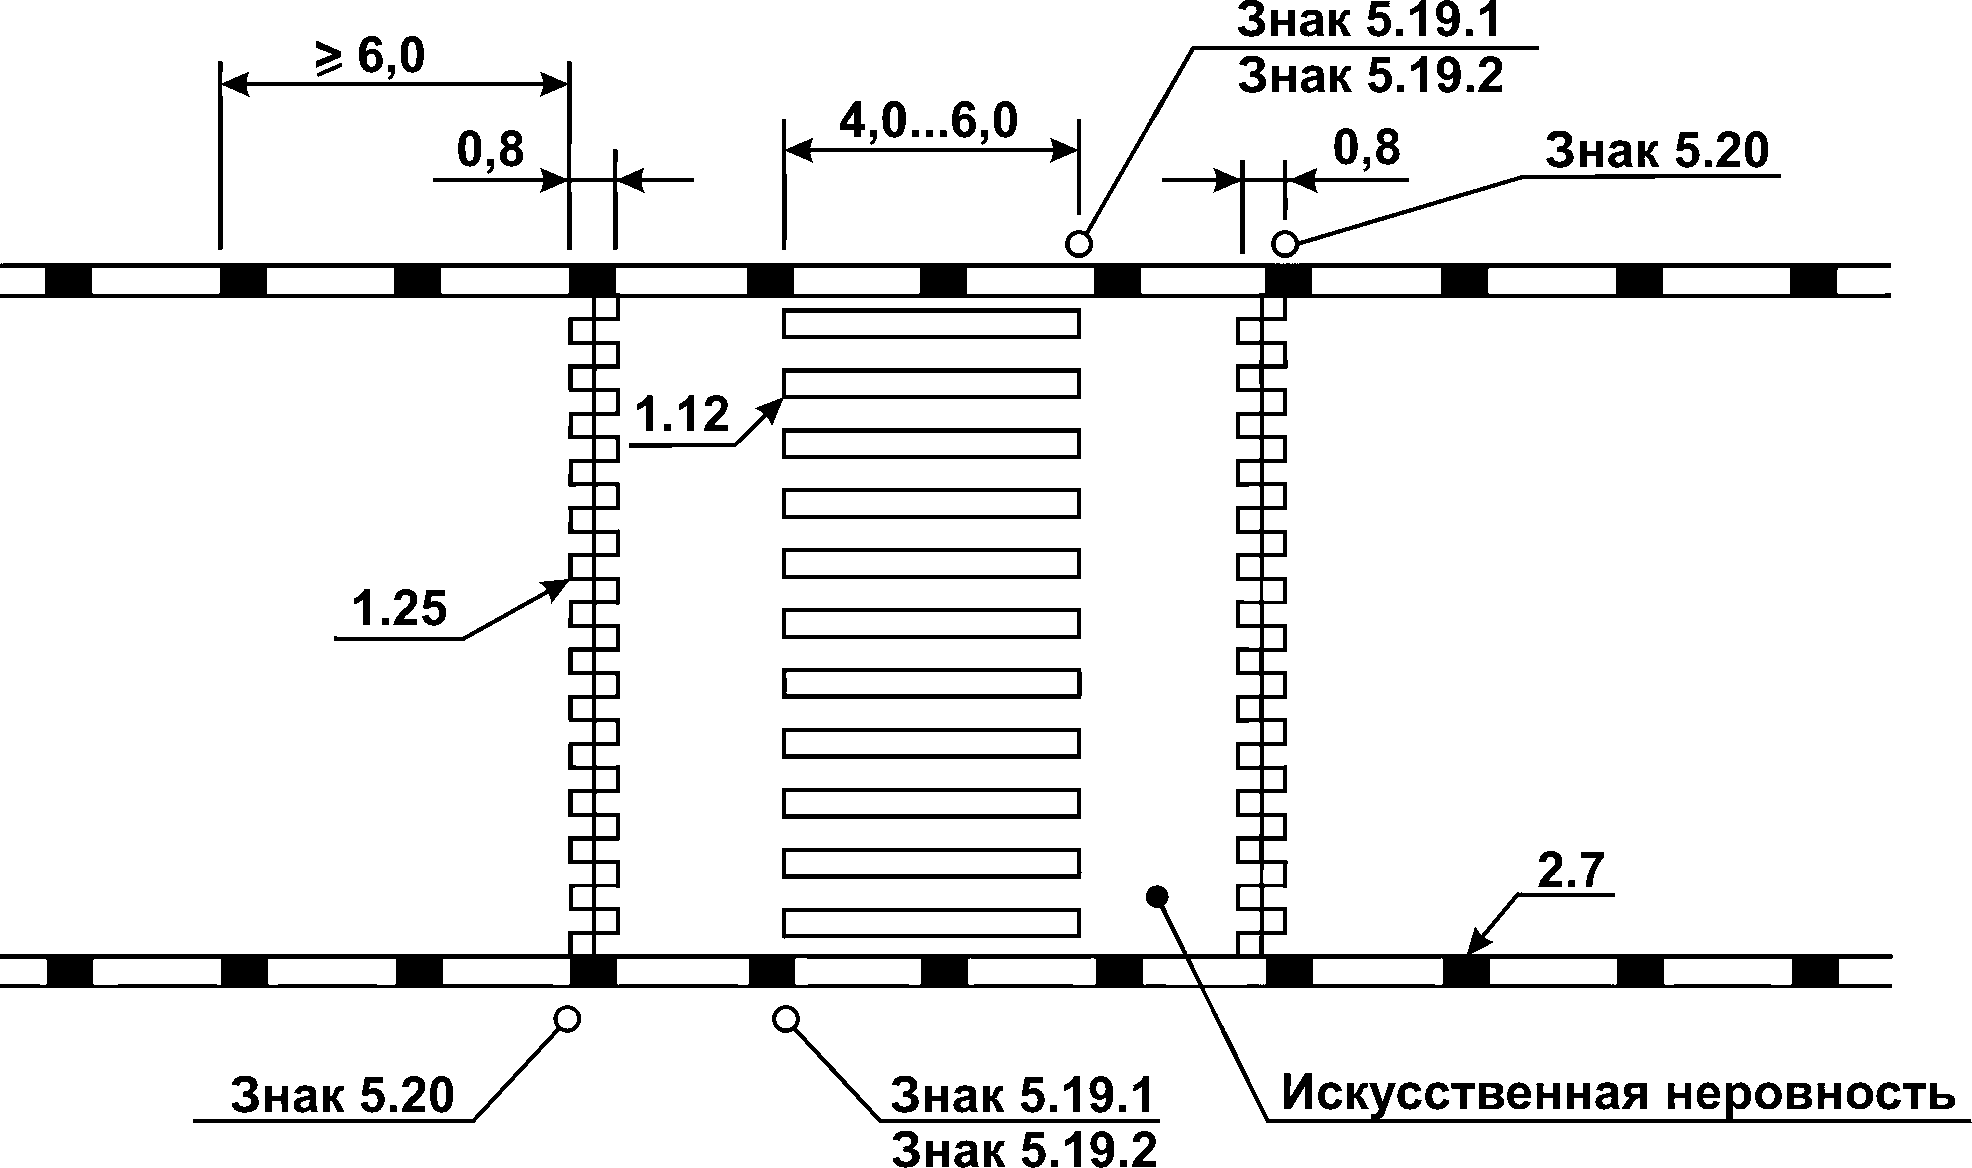 Ширина разметки пешеходного перехода. Ширина разметки пешеходного перехода 1.14.1. Тип разметки Тип 1.14.1).